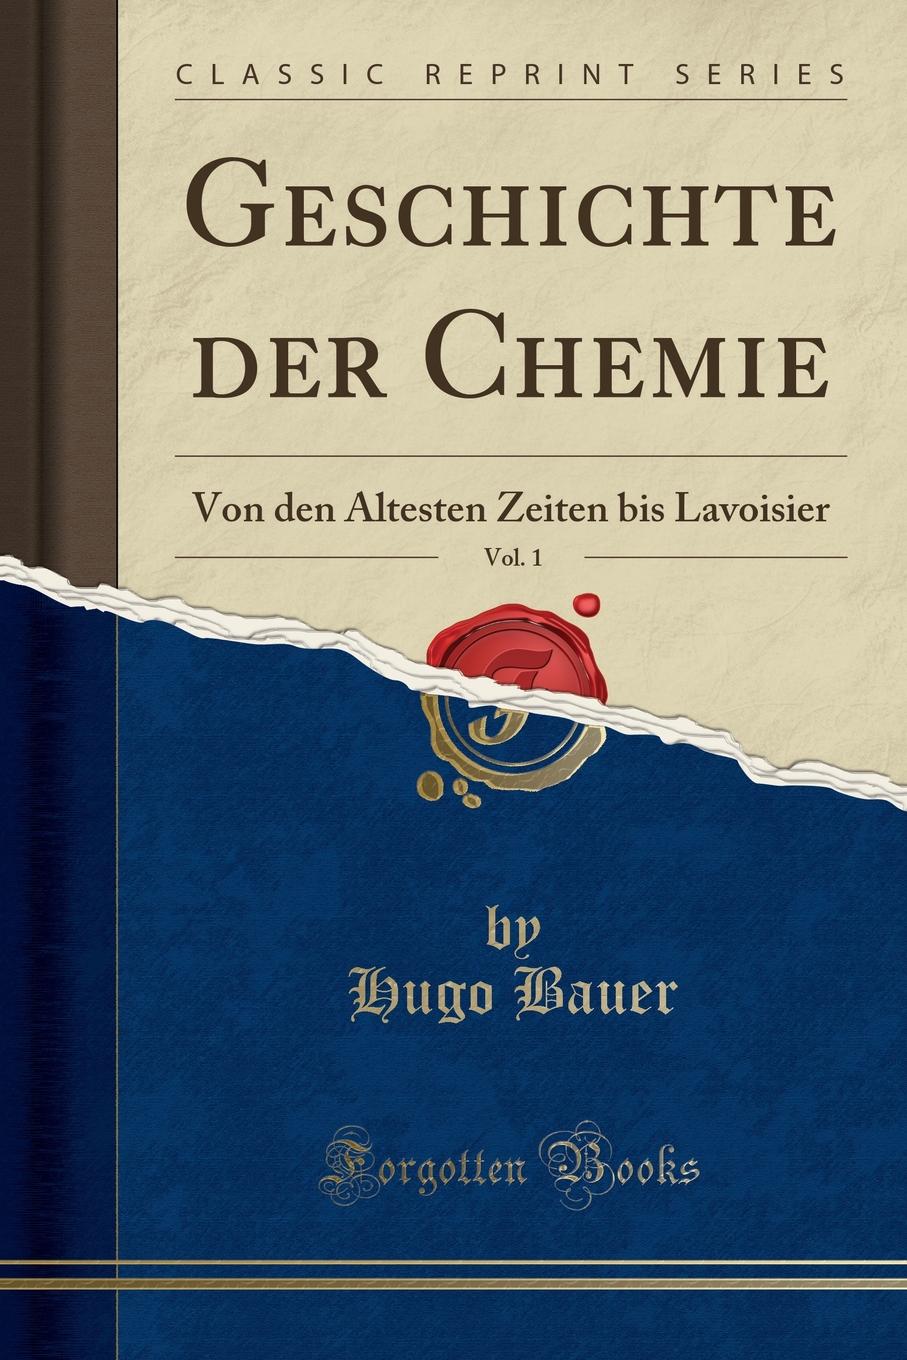 Geschichte der Chemie, Vol. 1. Von den Altesten Zeiten bis Lavoisier (Classic Reprint)